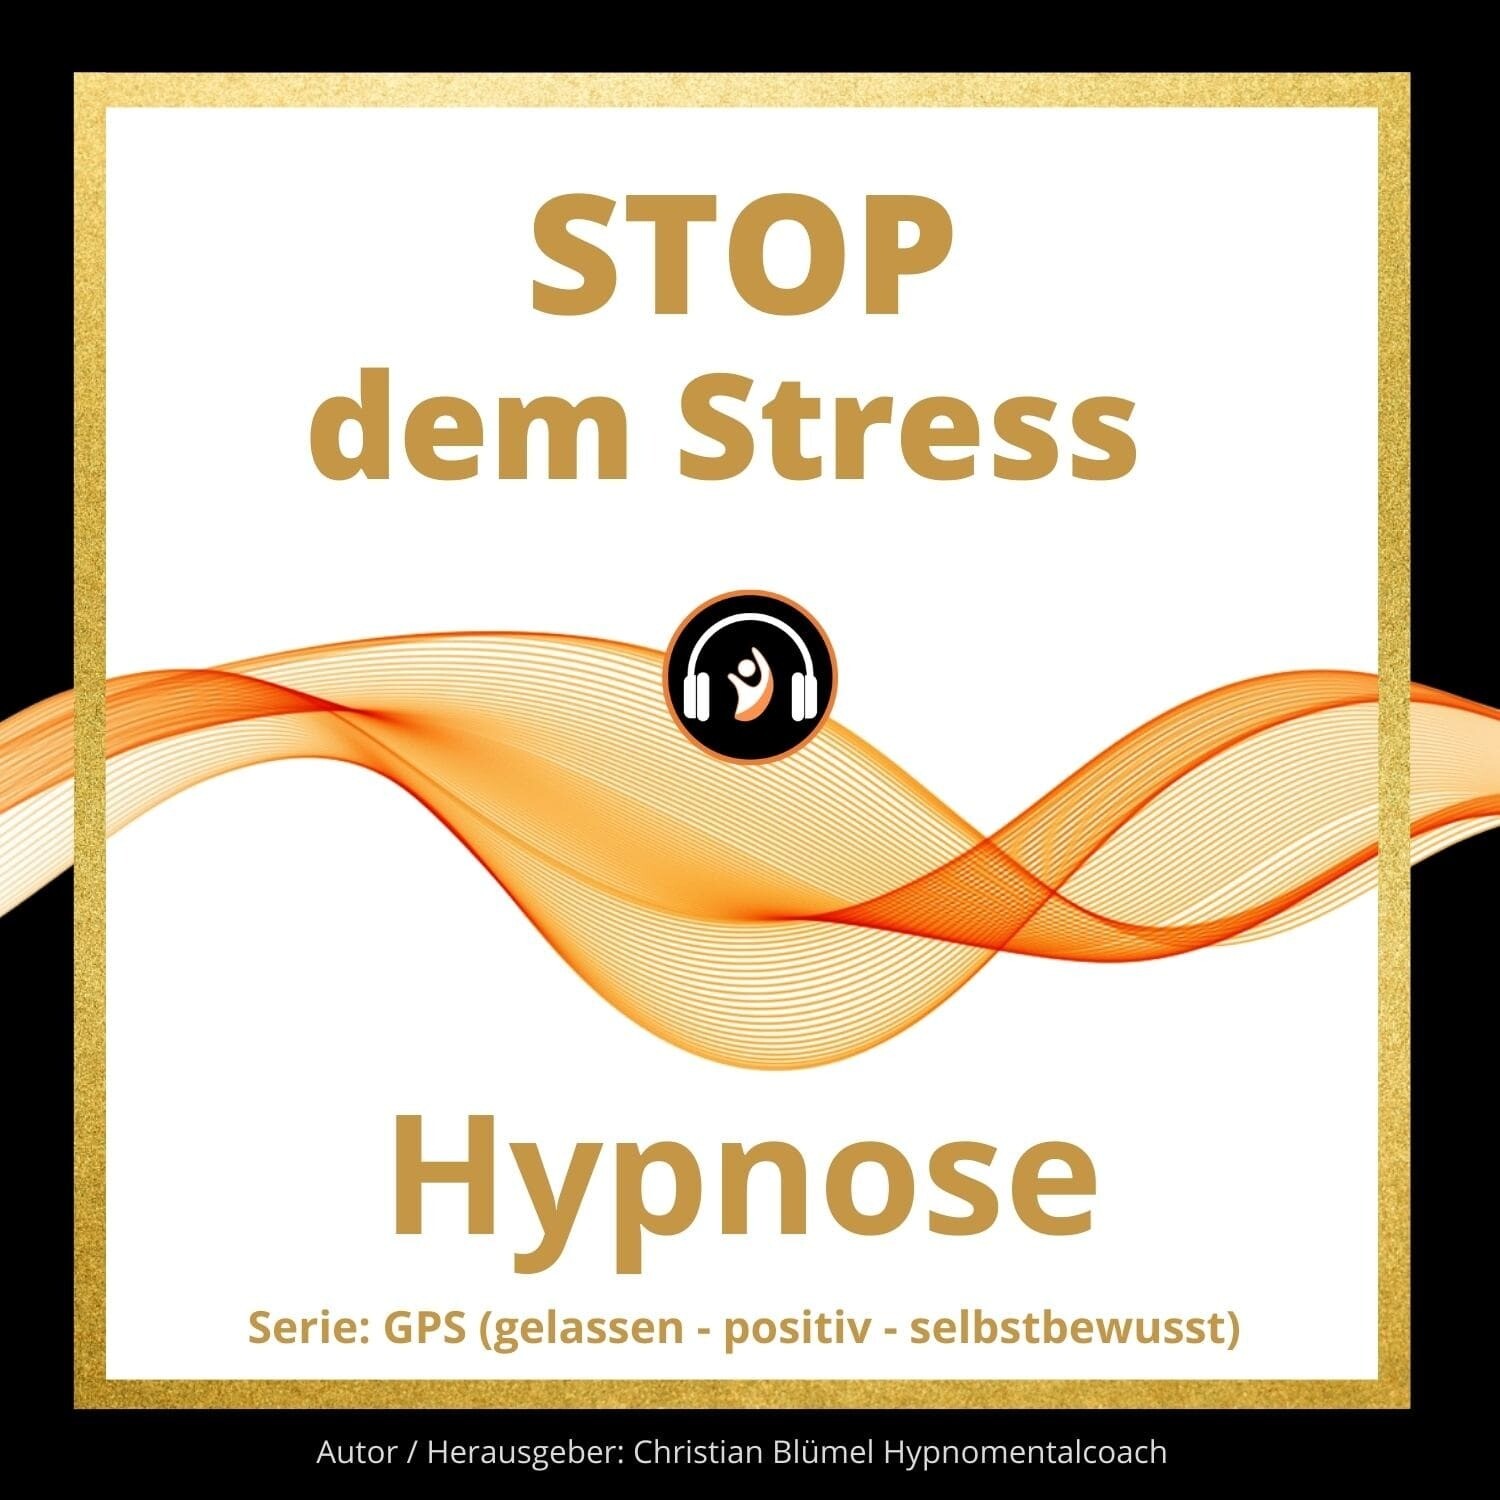 Audio Hypnose: Stop dem Stress
GPS – gelassen-positiv-selbstbewusst